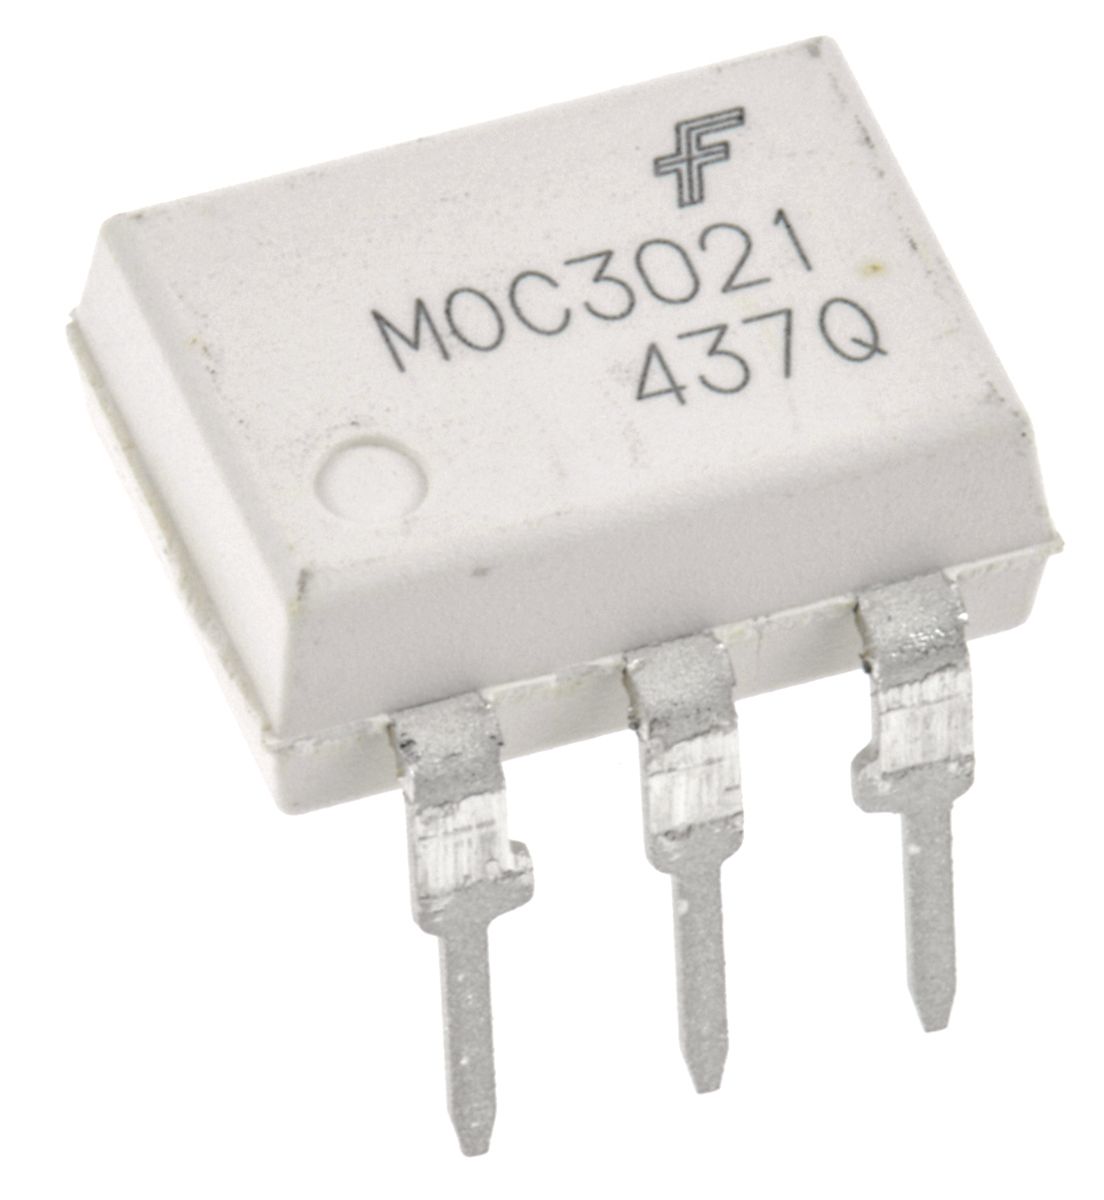 onsemi, MOC3021M DC Input Triac Output Optocoupler, Through Hole, 6-Pin DIP